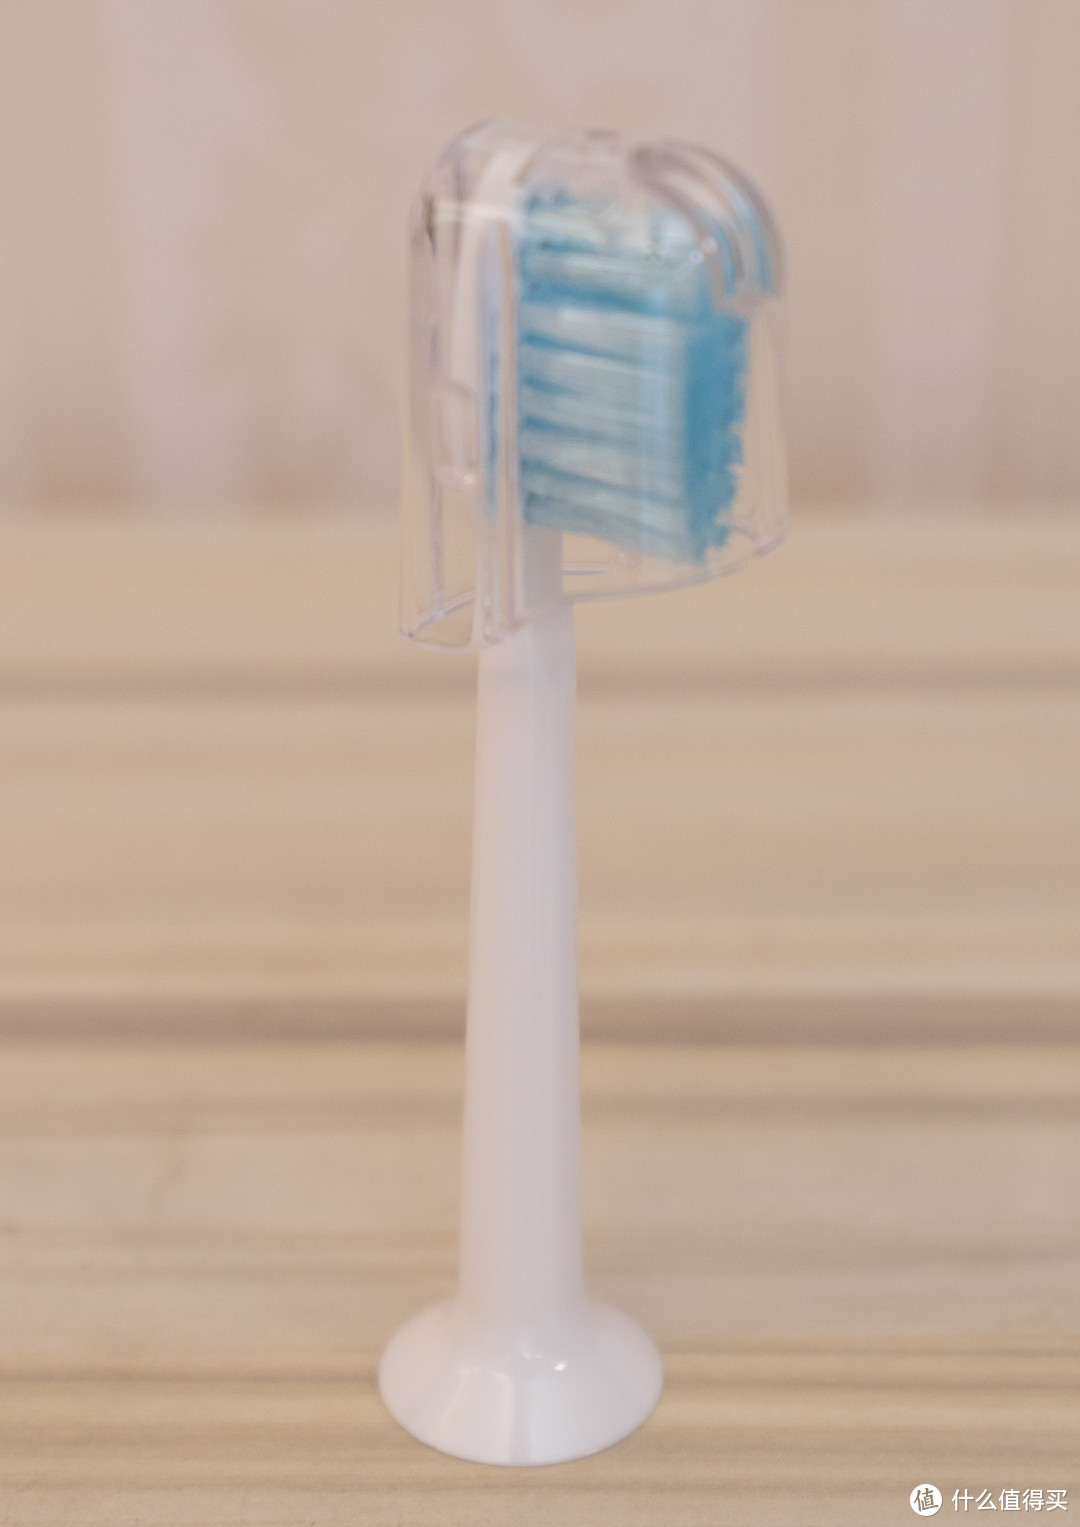 普通消费级电动牙刷又多一个选择：京造JZLITE声波电动牙刷体验